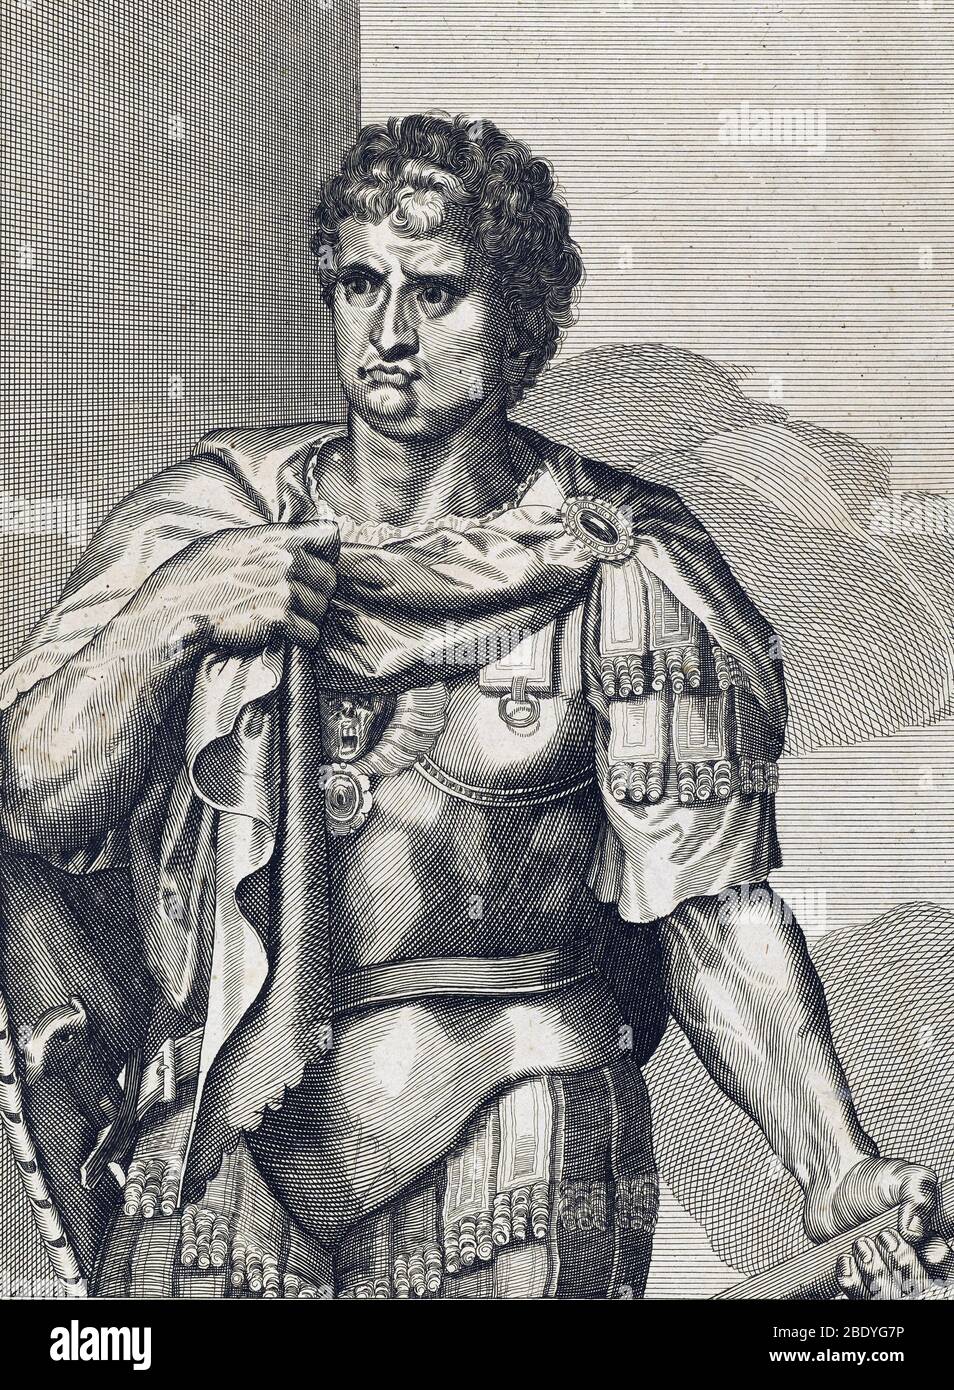 Nero, 5e empereur de Rome Banque D'Images